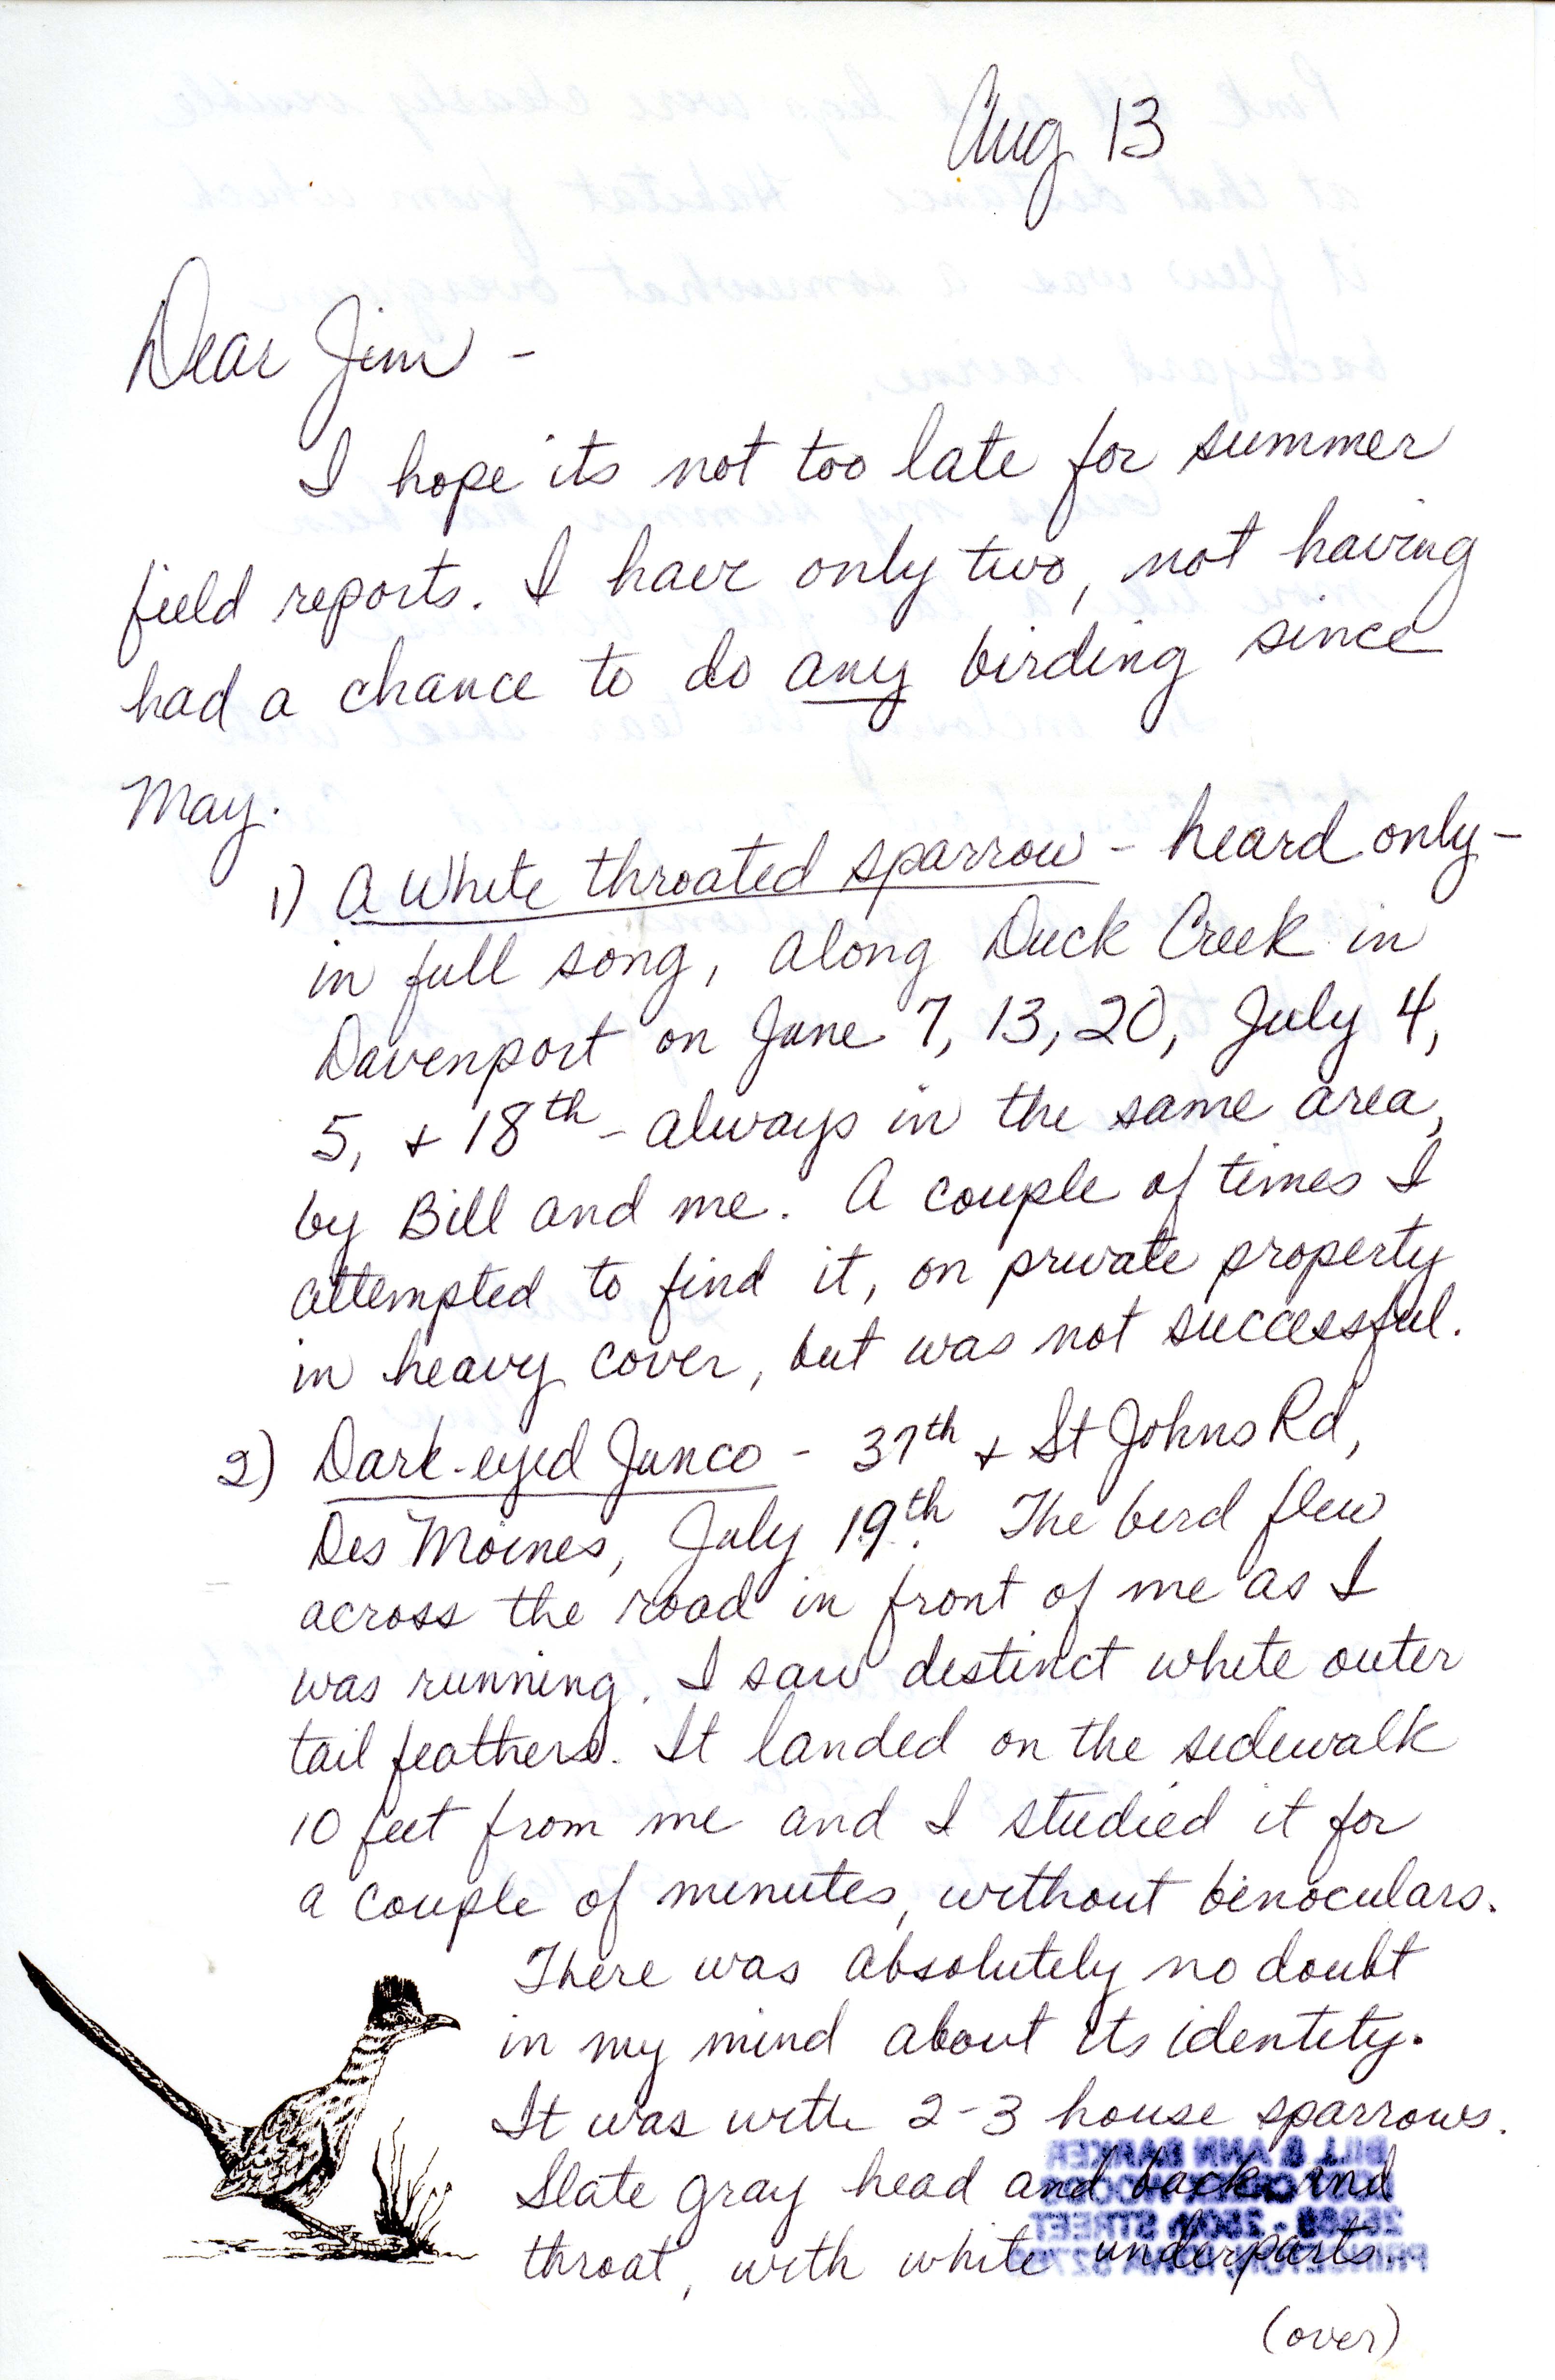 Ann M. Barker letter to James J. Dinsmore regarding summer bird sightings, August 13, 1987